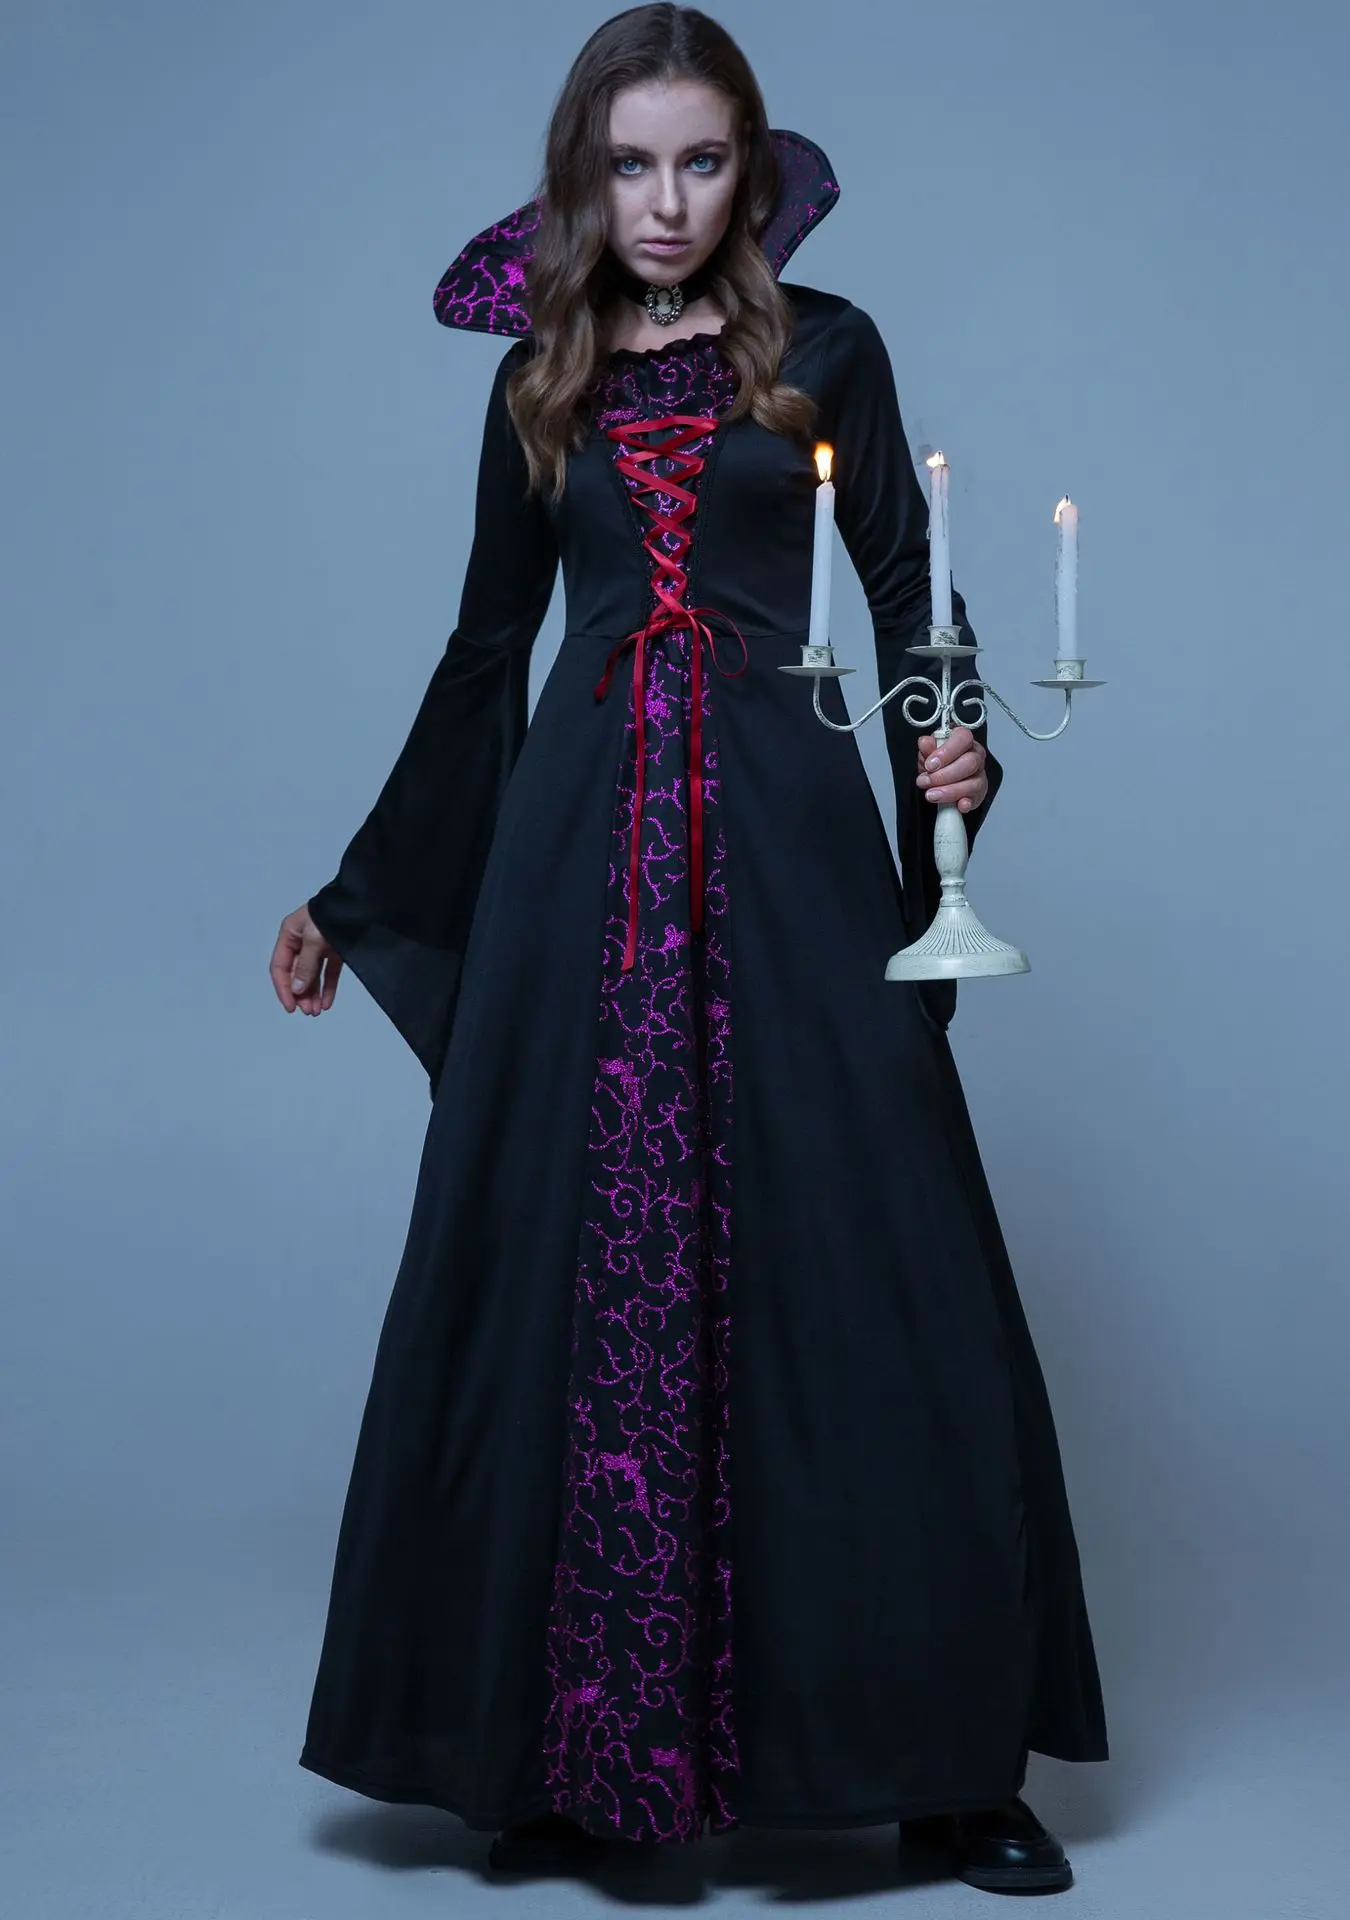 レトロゴシックヴァンパイアロードレス、ハロウィーンのバスローブ、中世のコート、クイーンドレス